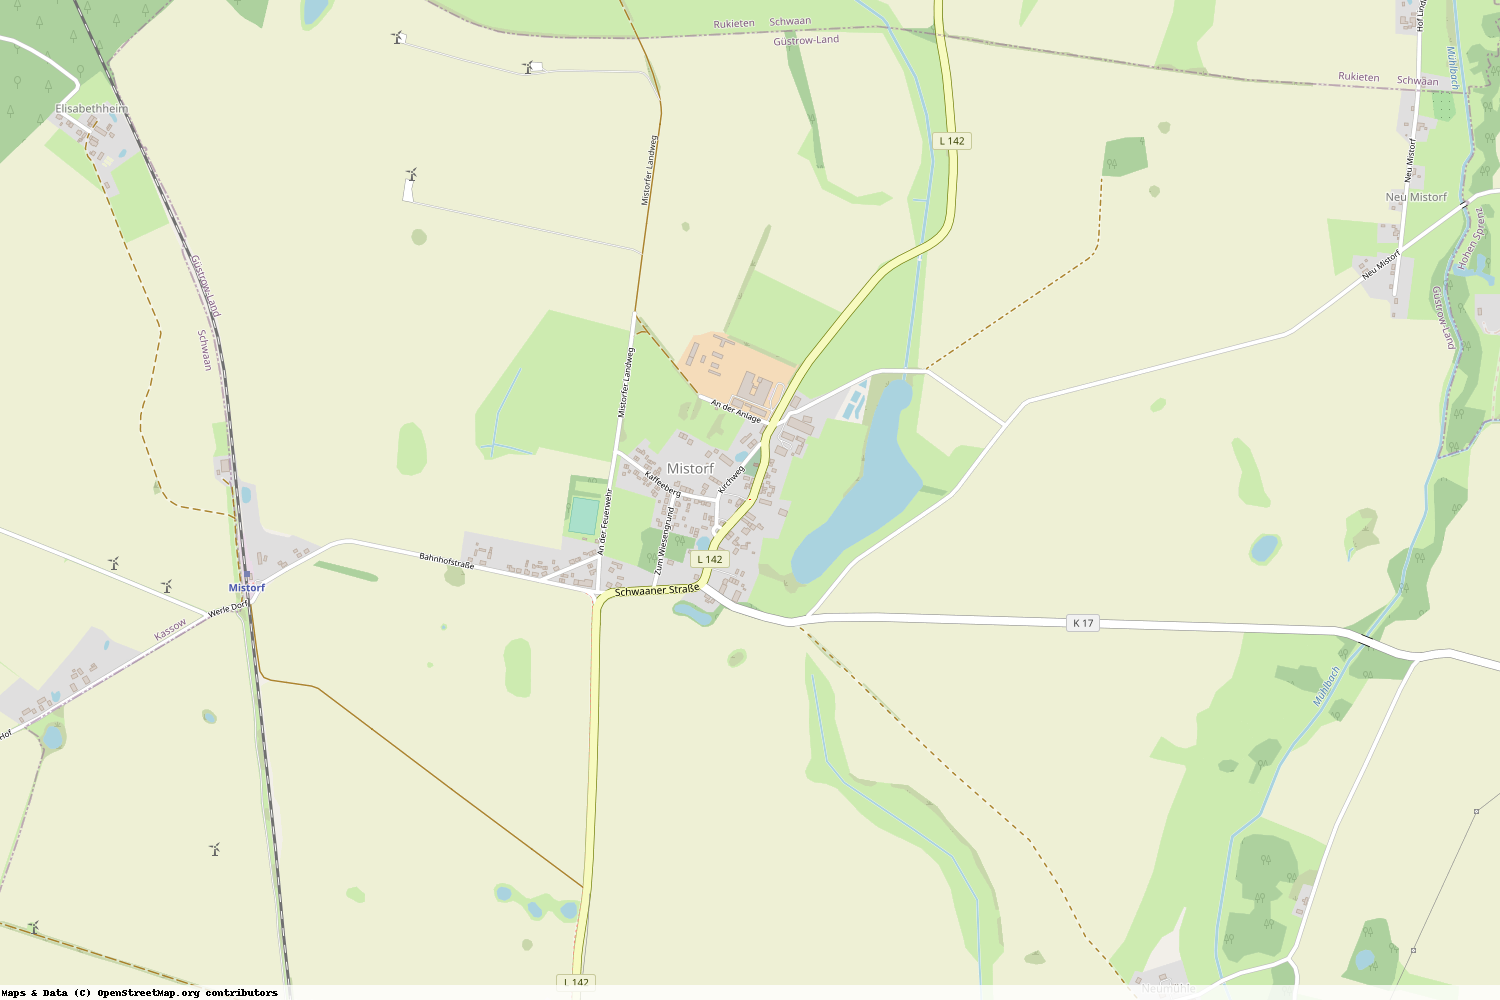 Ist gerade Stromausfall in Mecklenburg-Vorpommern - Rostock - Mistorf?